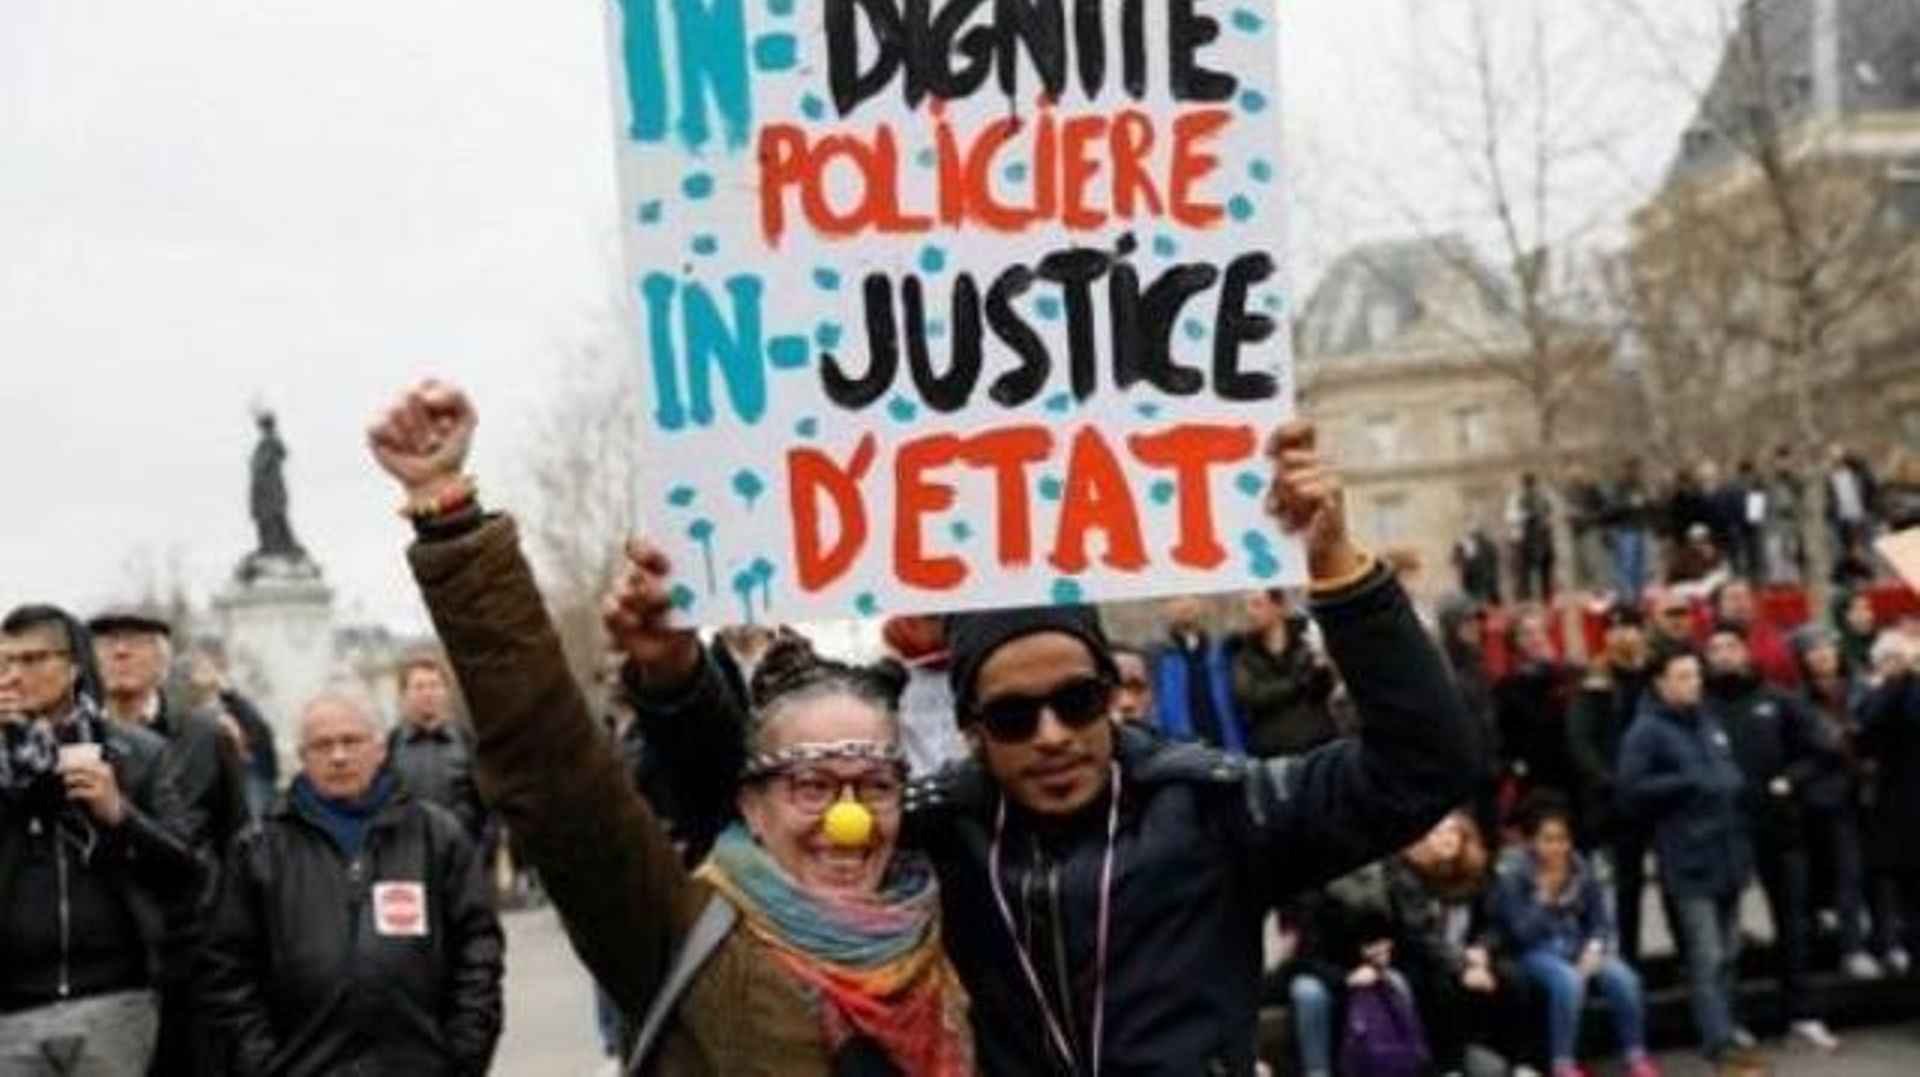 Quelques milliers de manifestants à Paris contre les "violences policières"